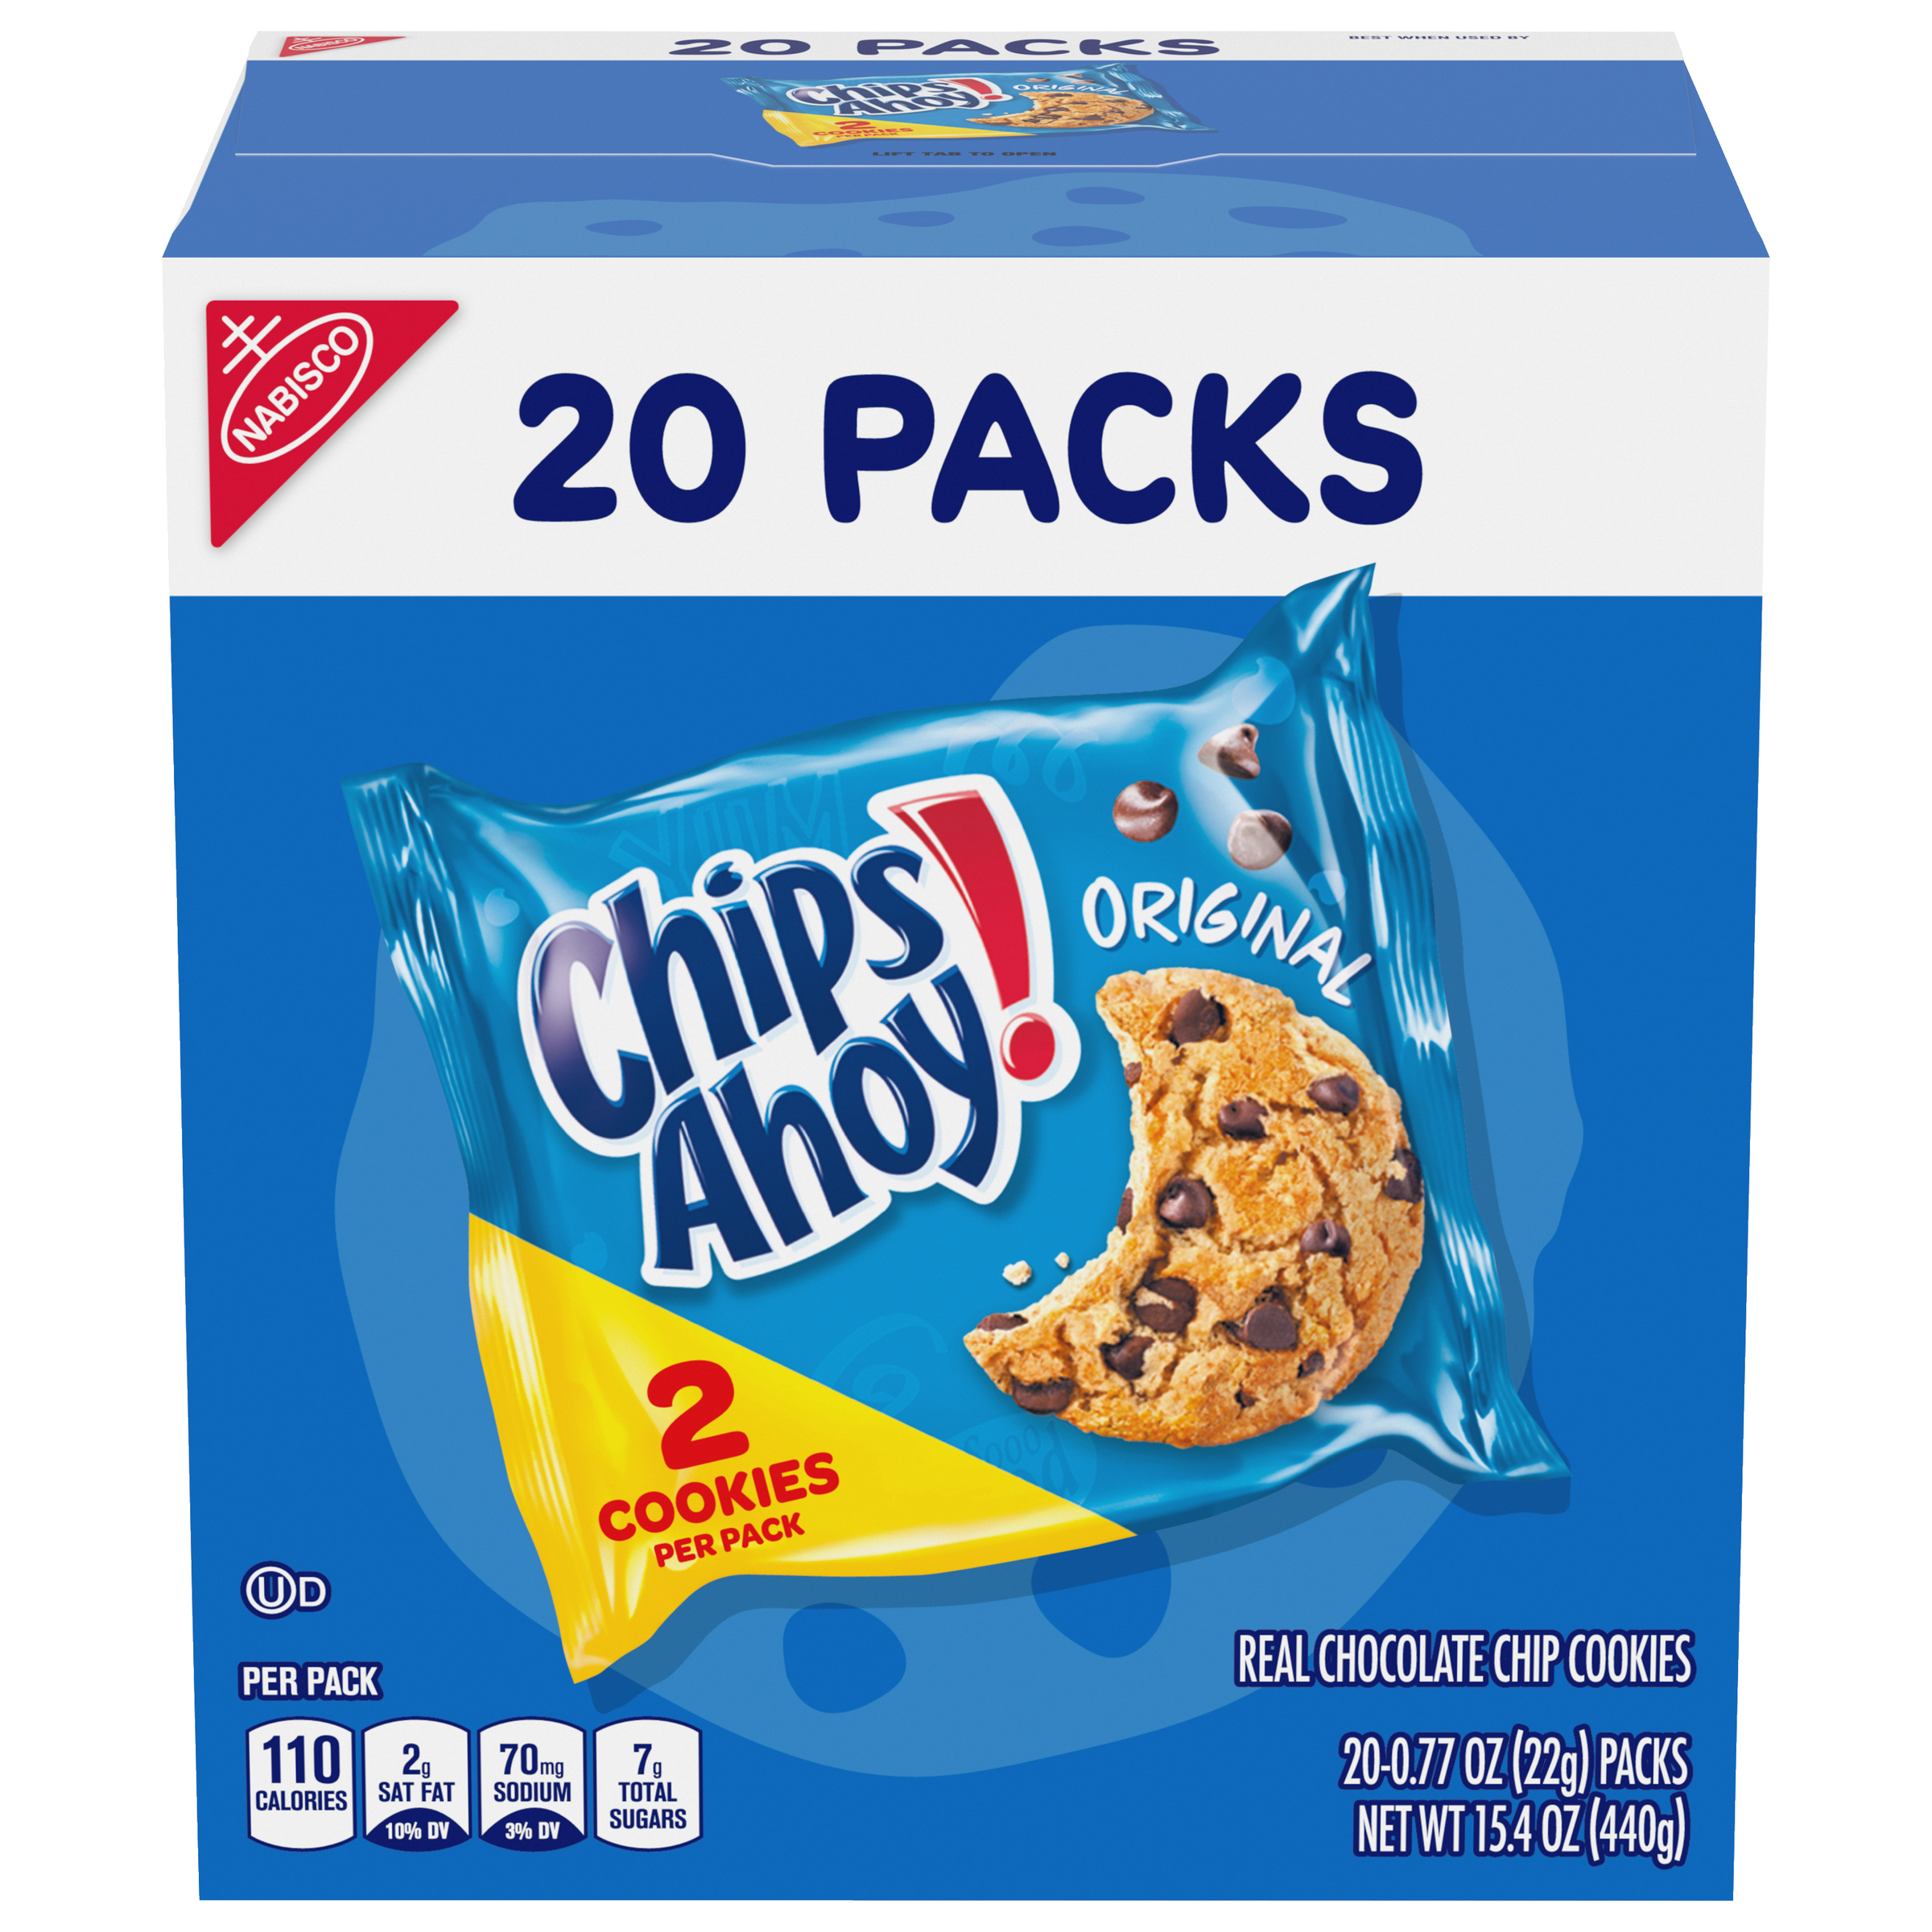 CHIPS AHOY! Original Chocolate Chip Cookies, 20 Snack Packs (2 cookies per pack)